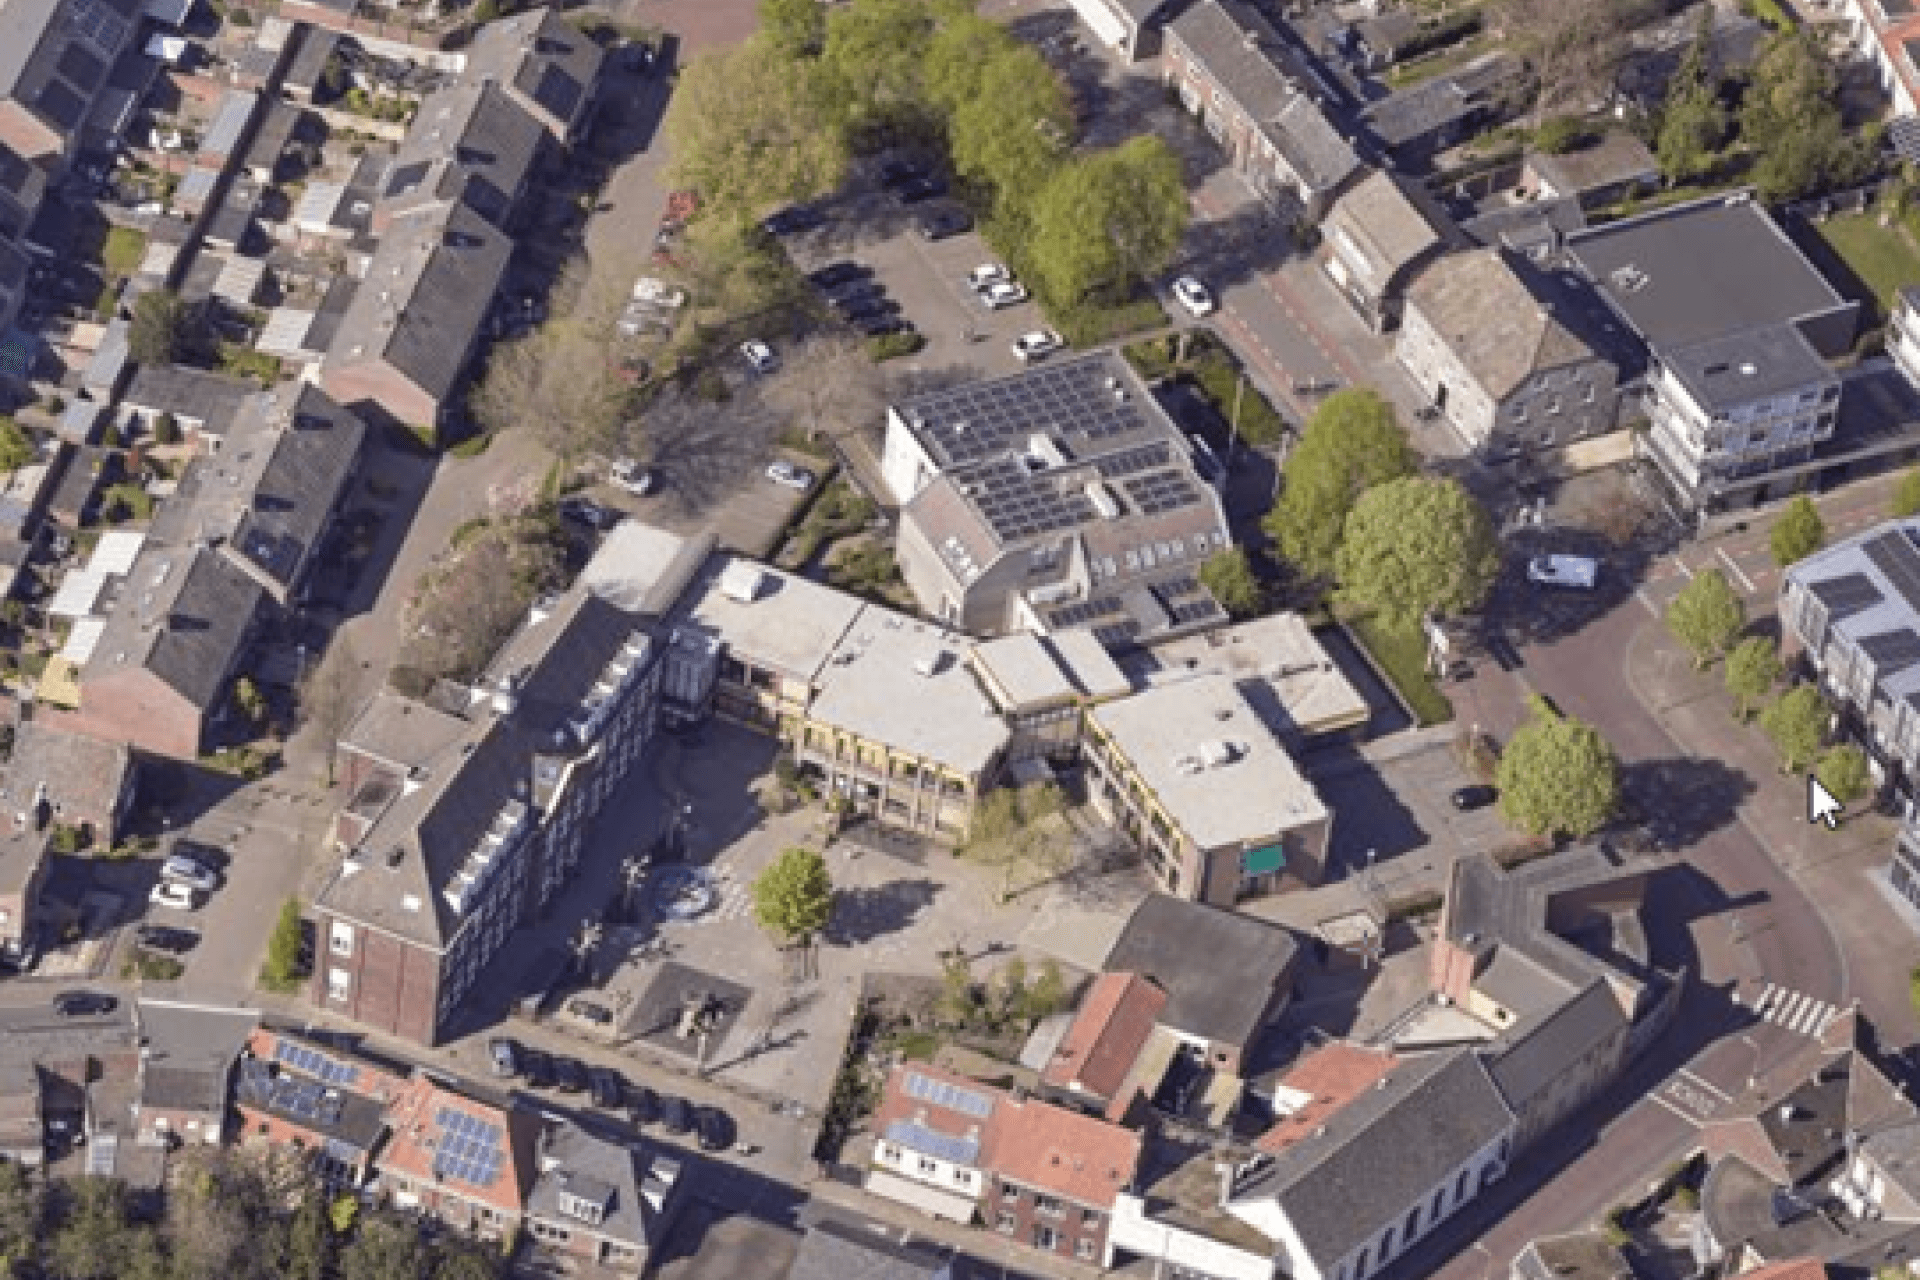 Luchtfoto van de omgeving van basisschool Weisterbeek.